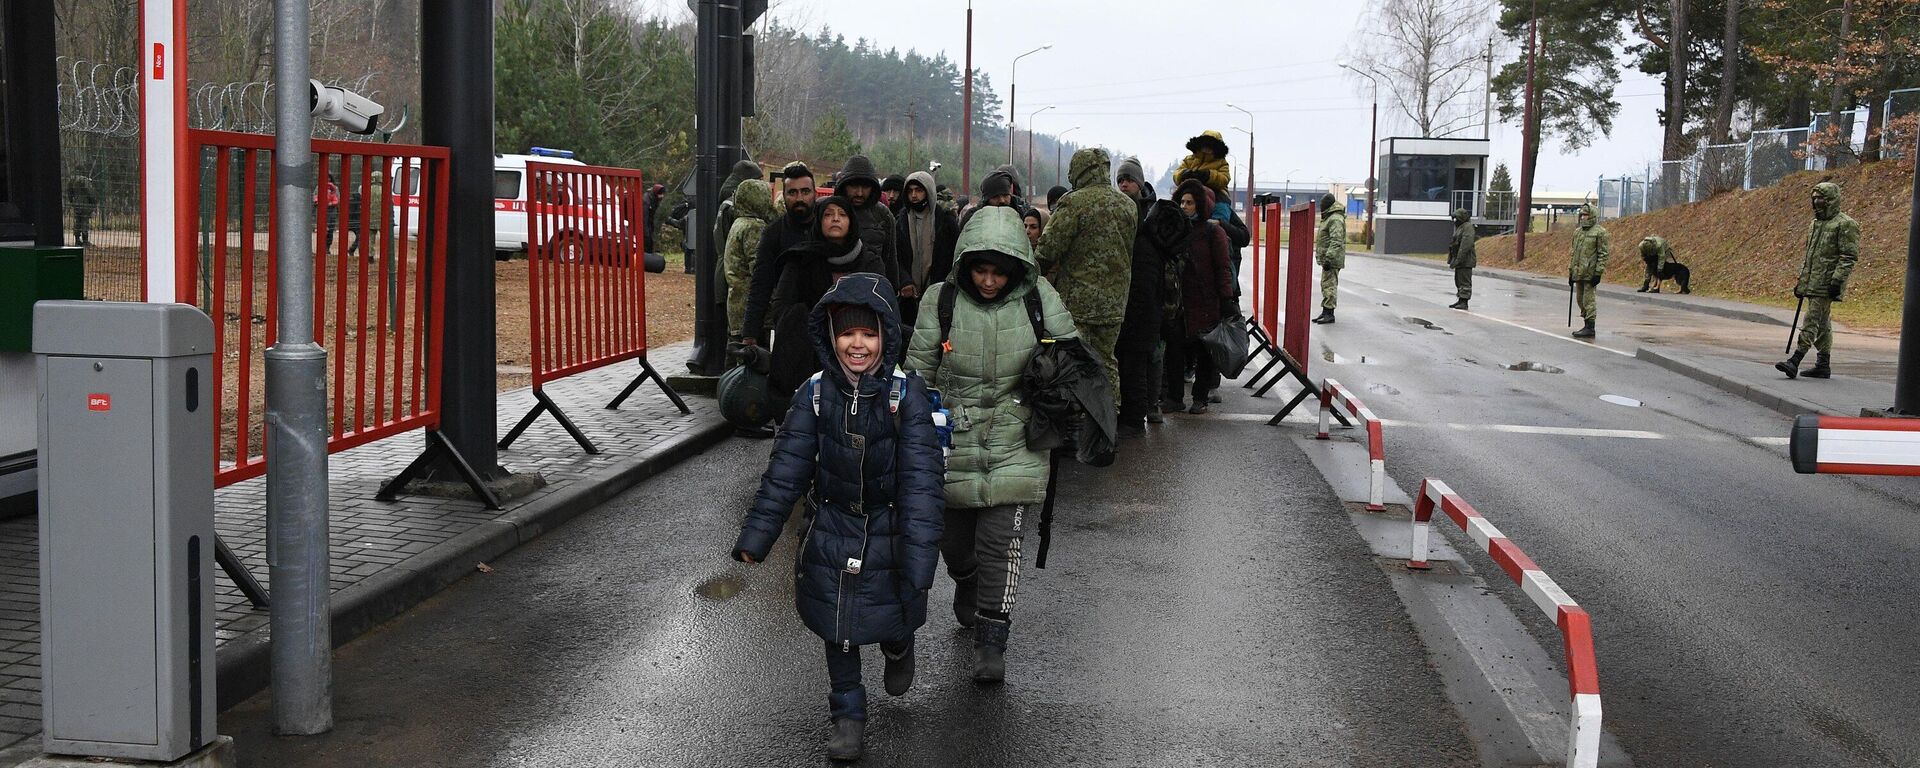 Мигранты покидают лагерь у границы с Польшей - Sputnik Беларусь, 1920, 19.11.2021